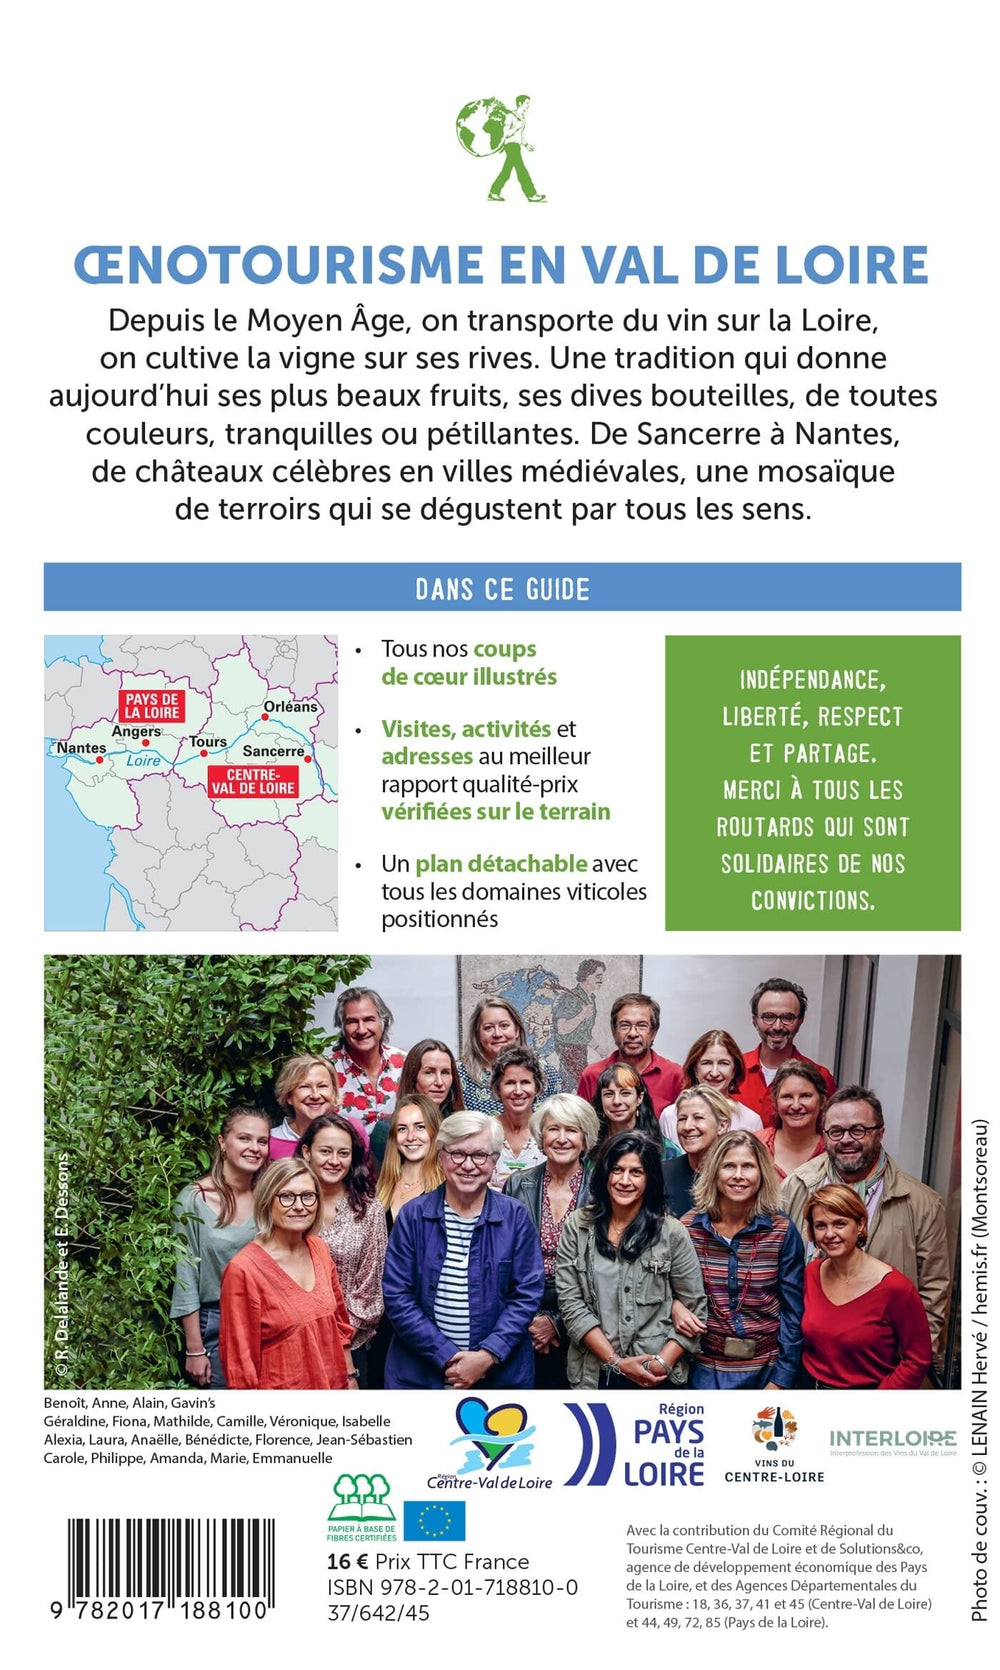 Guide du Routard - Oenotourisme en Val de Loire | Hachette guide de voyage Hachette 